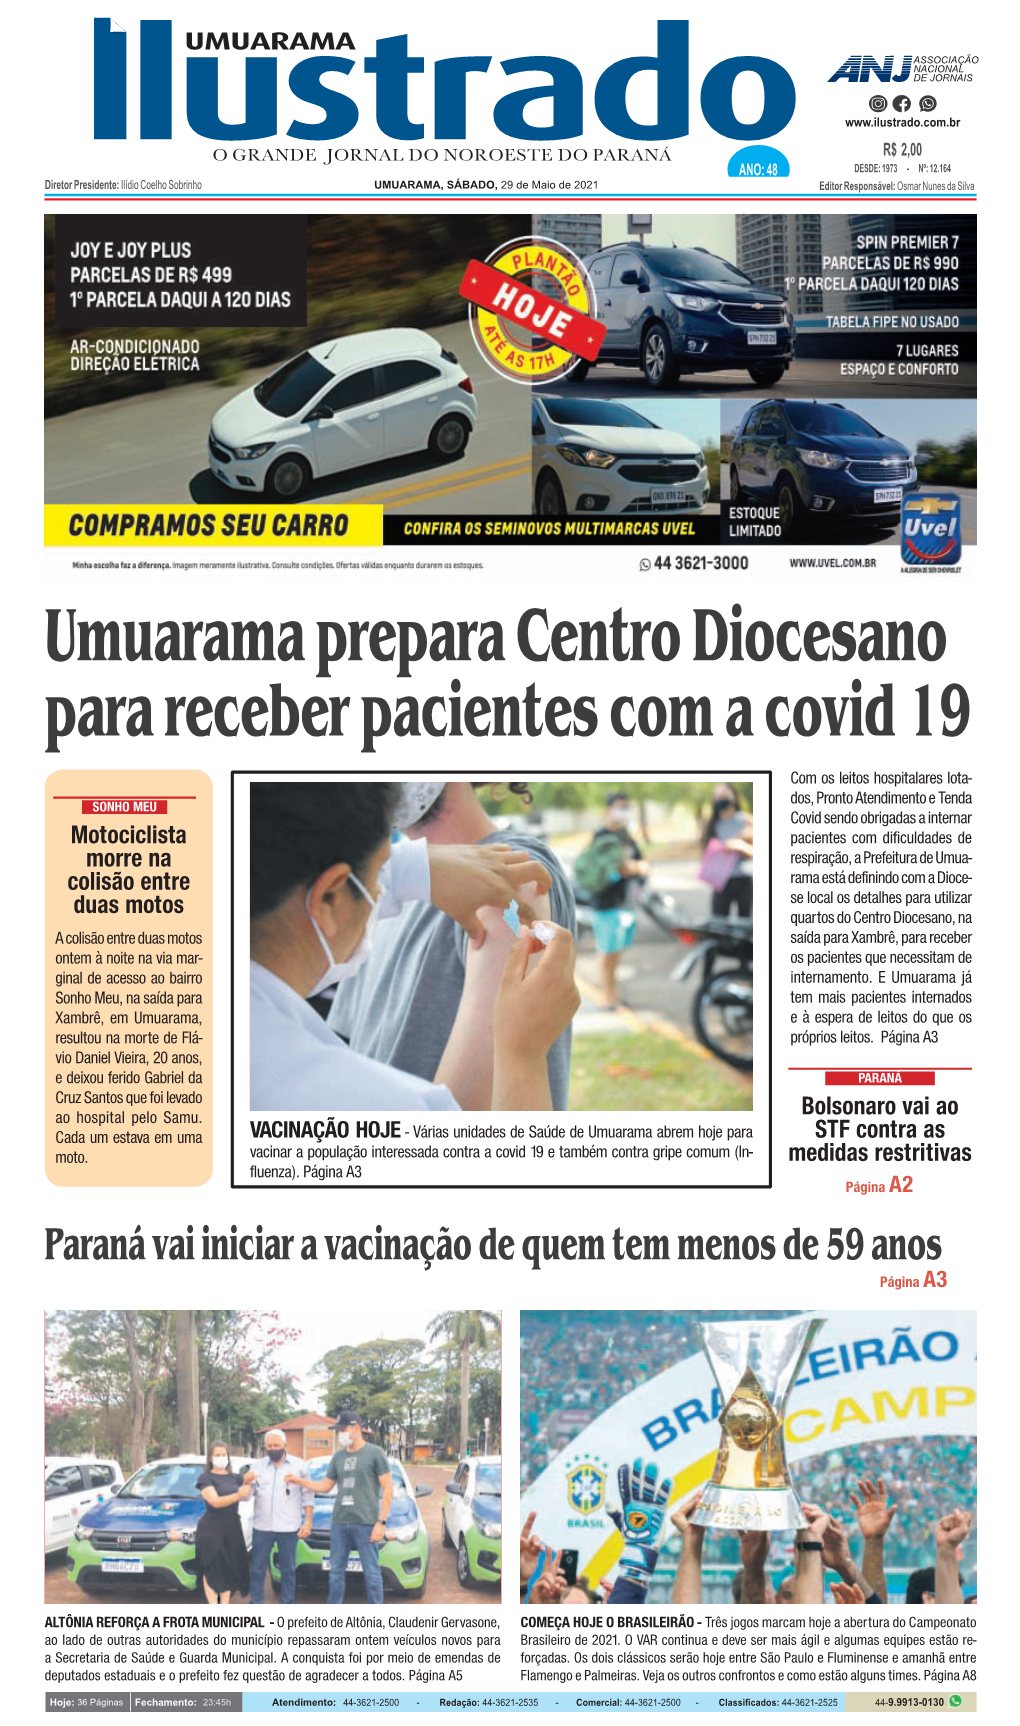 Paraná Vai Iniciar a Vacinação De Quem Tem Menos De 59 Anos Página A3